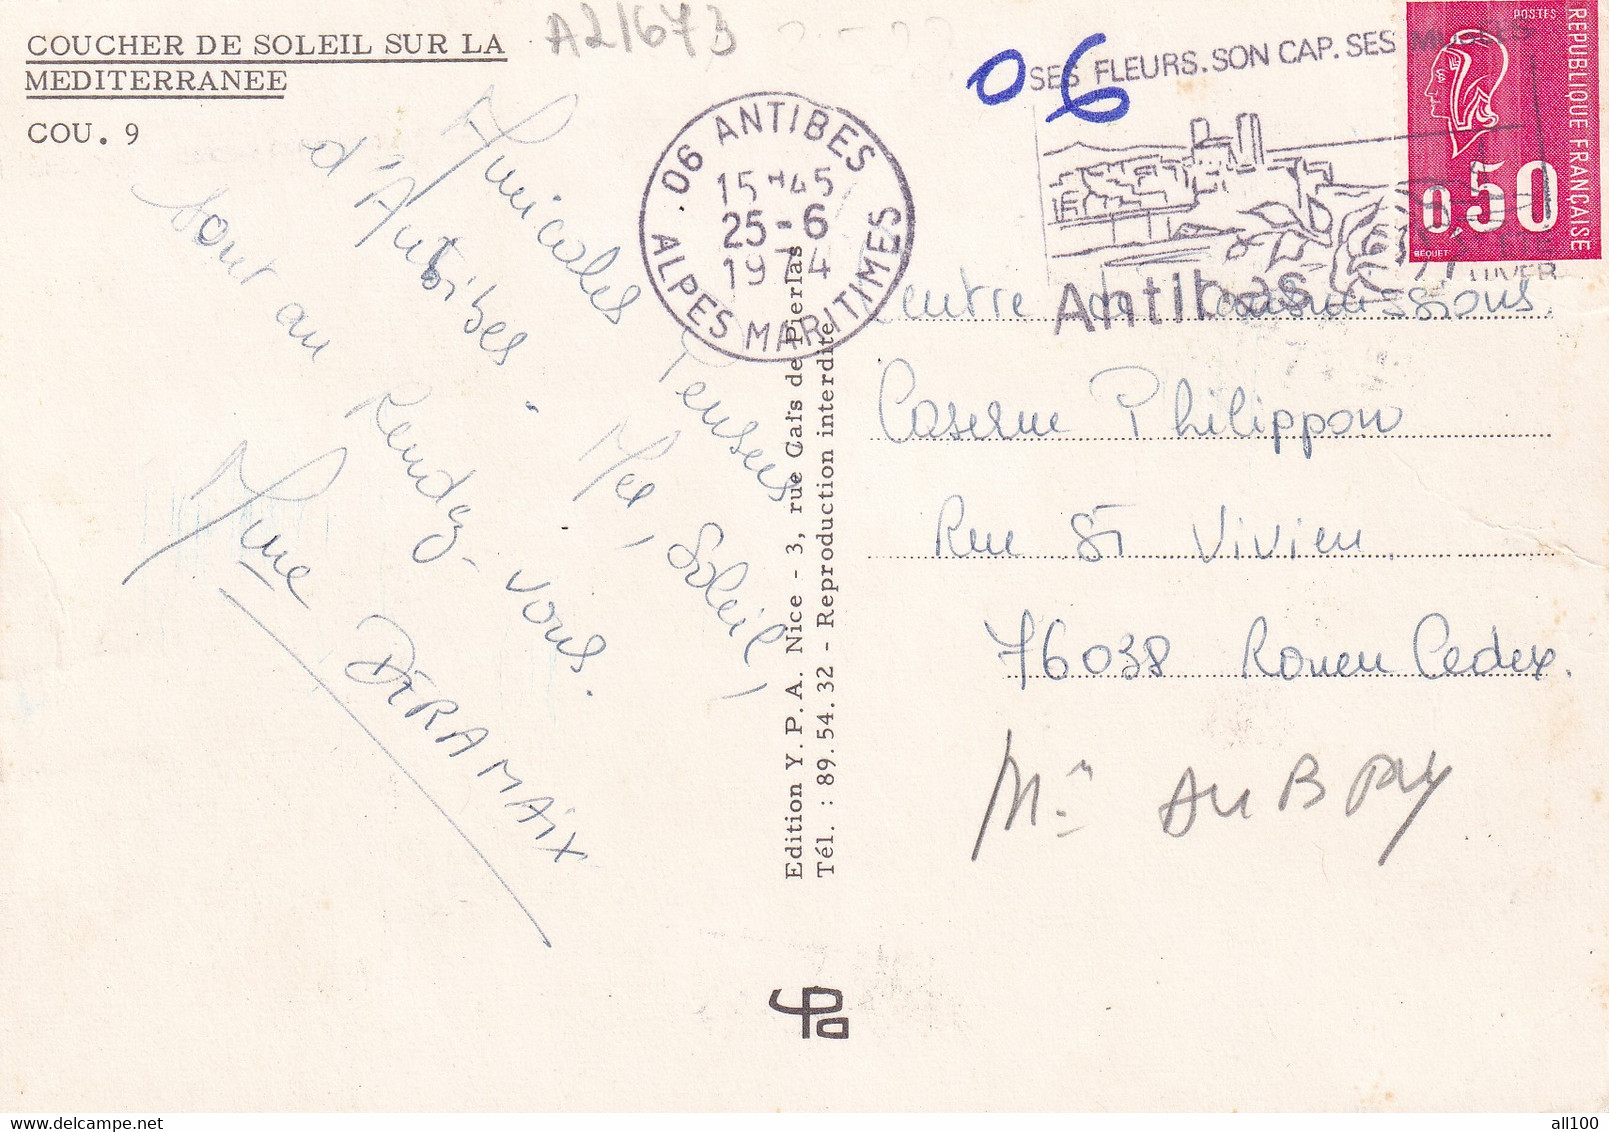 A21673 - Coucher De Soleil Sur La Mediterranee Fishing Boat France Post Card Used 1974 Stamp Republique Francaise - Pêche